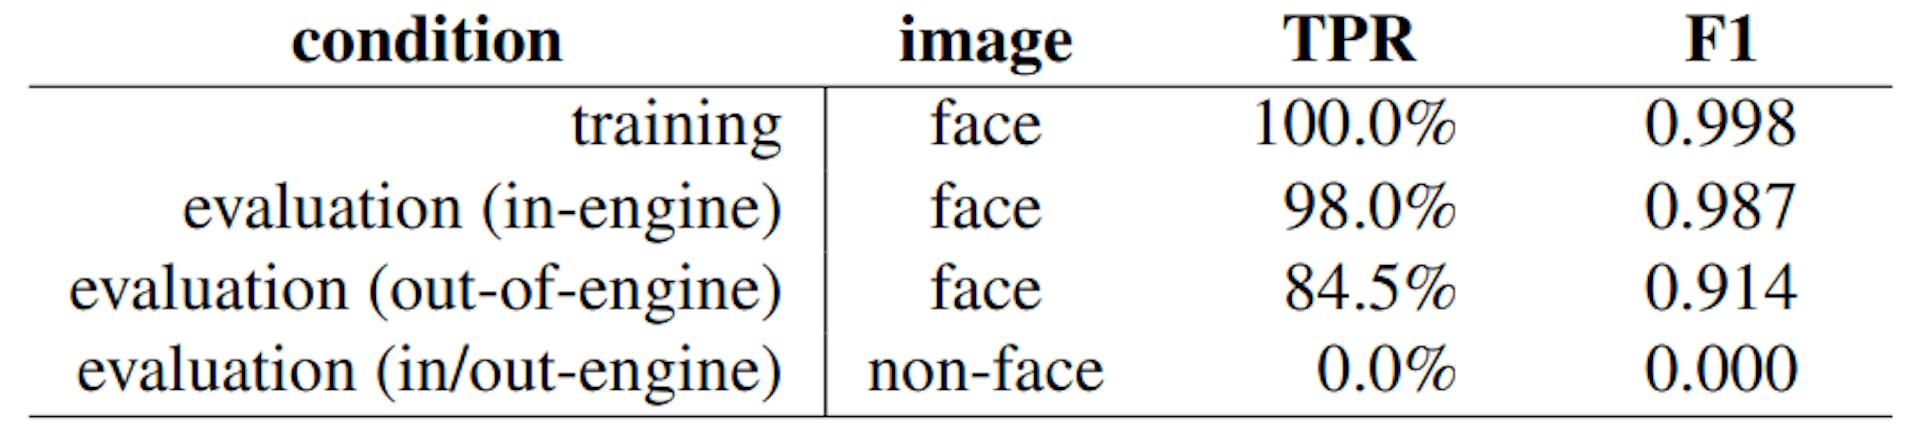 Tabelle 2. Basistraining und Bewertung True Positive (korrekte Klassifizierung eines KI-generierten Bildes, gemittelt über alle Synthese-Engines (TPR)). Unter jeder Bedingung beträgt die False-Positive-Rate 0,5 % (falsche Klassifizierung eines echten Gesichts (FPR)). Ebenfalls angegeben ist der F1-Score, definiert als 2TP/(2TP + FP + FN). TP, FP und FN stellen jeweils die Anzahl der True Positives, False Positives und False Negatives dar. In-Engine/Out-of-Engine bedeutet, dass die Bilder mit denselben/anderen Synthese-Engines erstellt wurden wie die, die beim Training verwendet wurden.